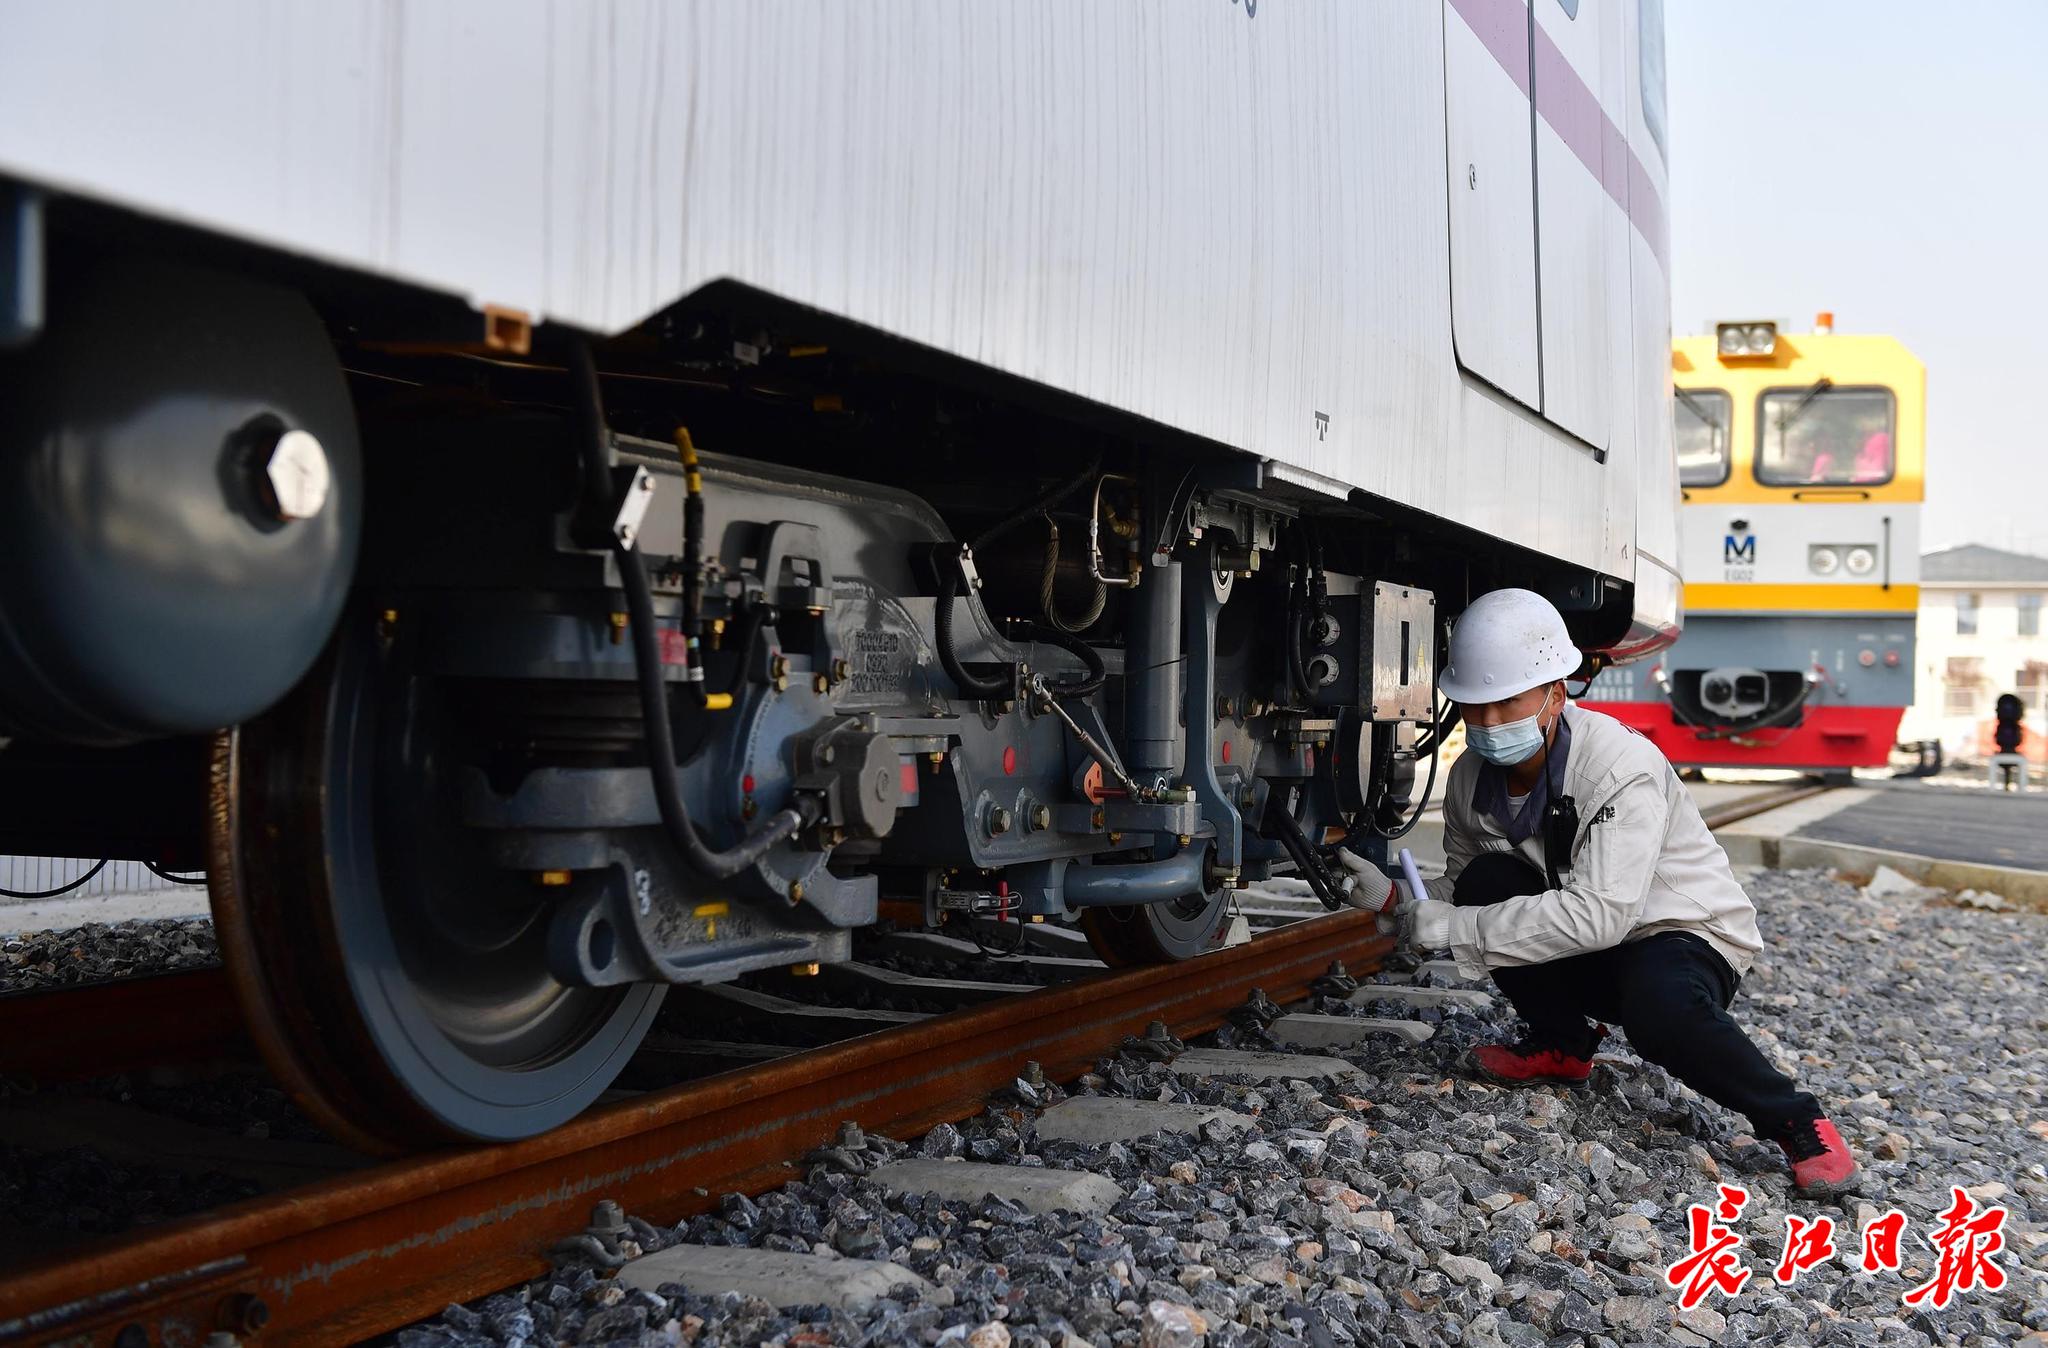 工作人员在检查吊装到轨道上的列车。记者李永刚 摄